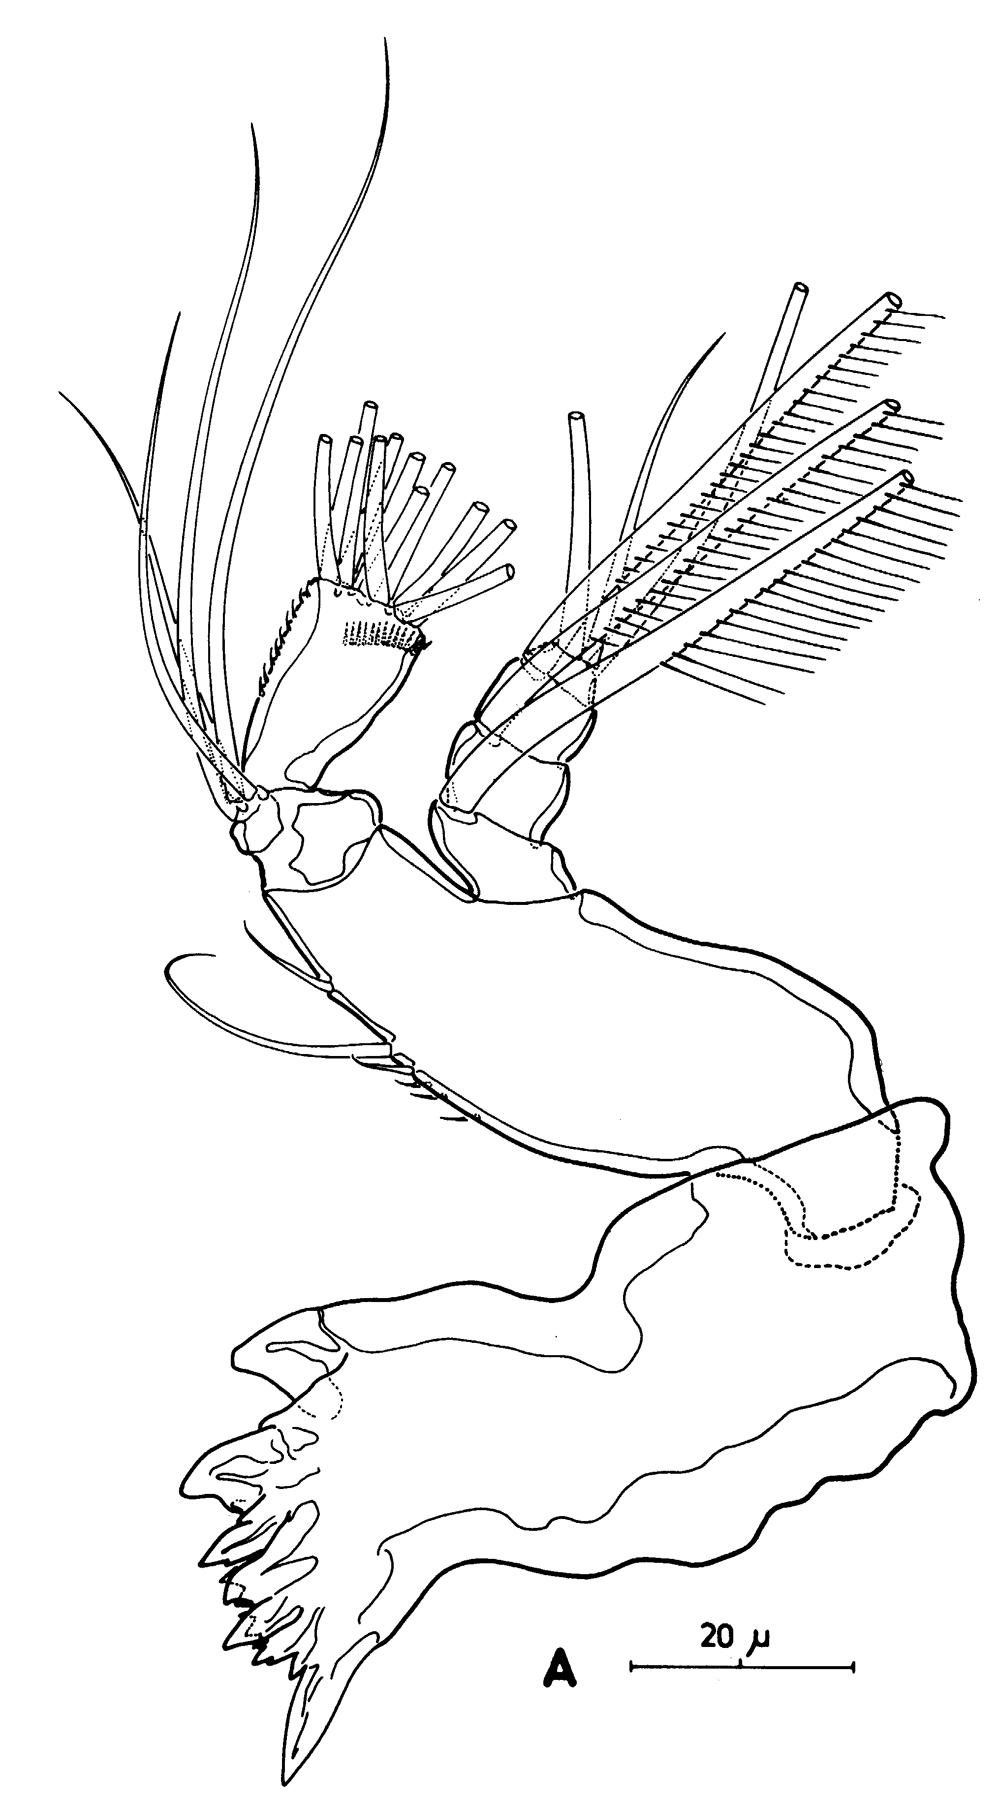 Espèce Pseudocyclops bahamensis - Planche 5 de figures morphologiques